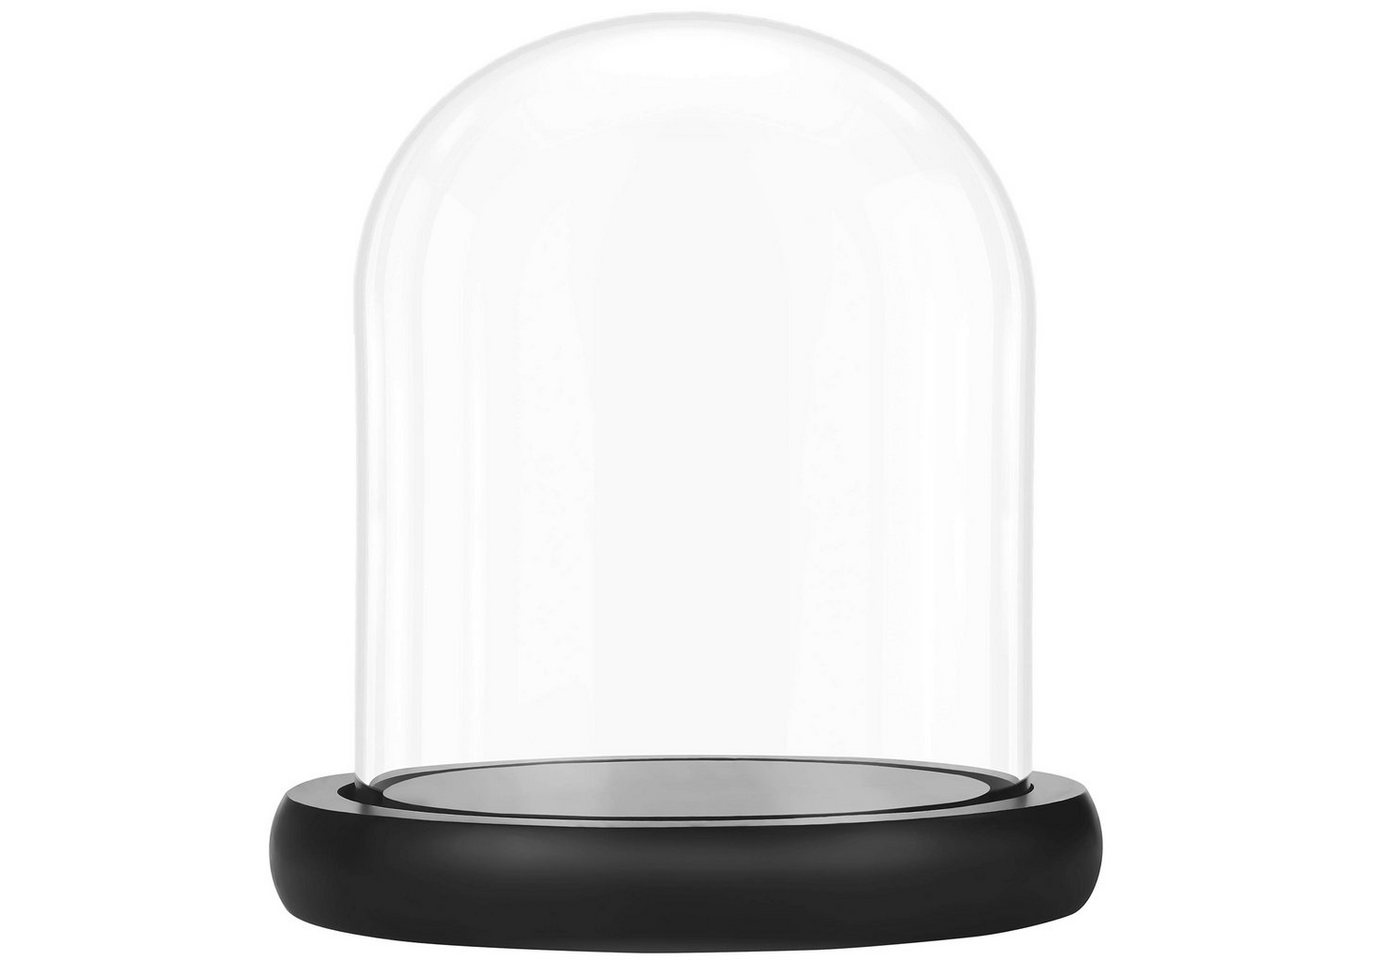 Belle Vous Dekoobjekt Black Glass Bell with Plate, 17 cm - Stylish Display, Deko Glasglocke mit Teller, schwarz, 17 cm von Belle Vous